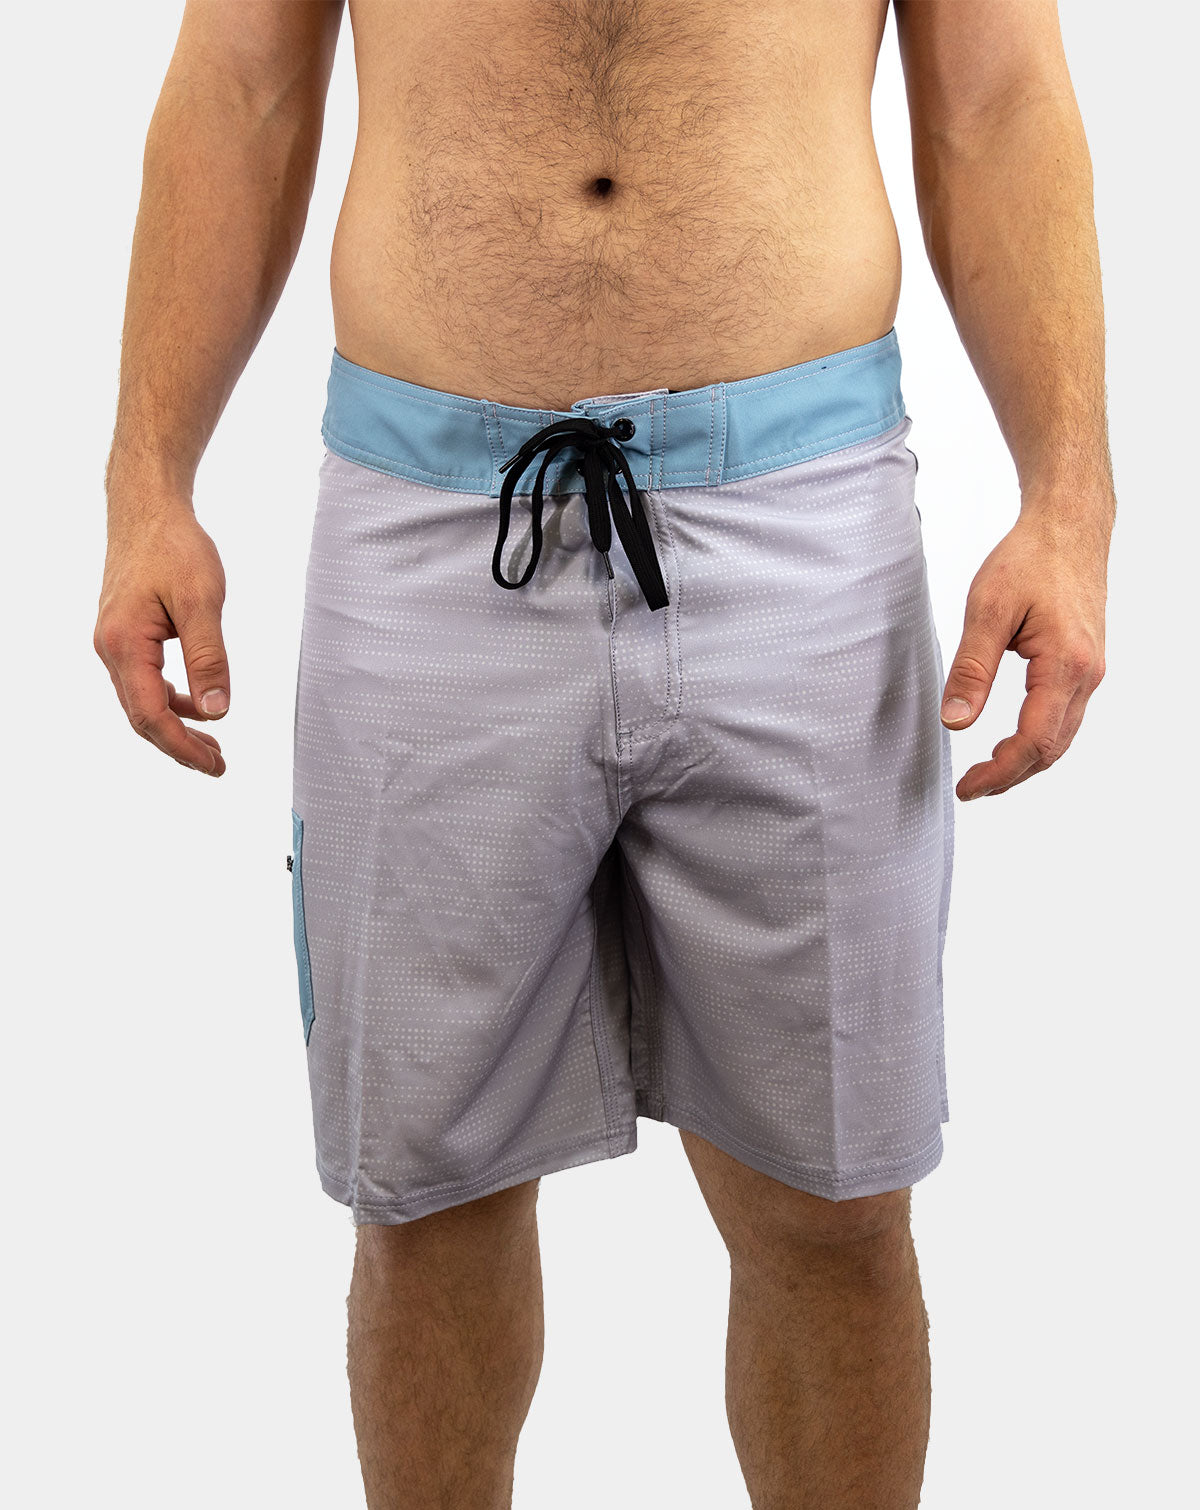 Reel Legends Marlin Pants Beige Nylon Zip off Convertible Shorts Fishing  Men's S